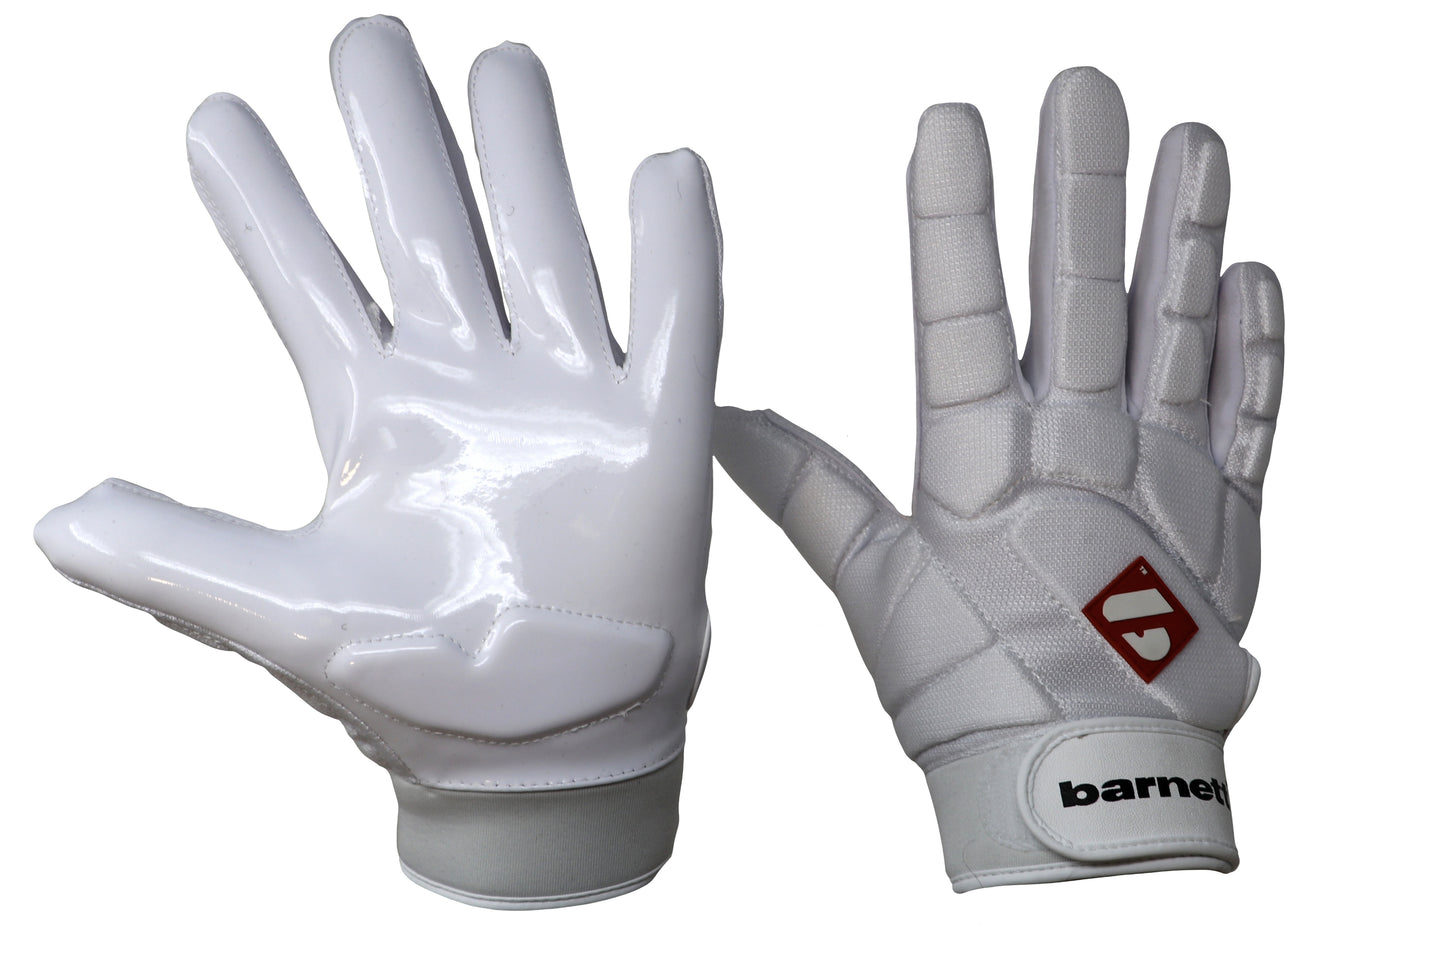 FKG-03 High level linebacker football gloves, LB,RB,TE, White